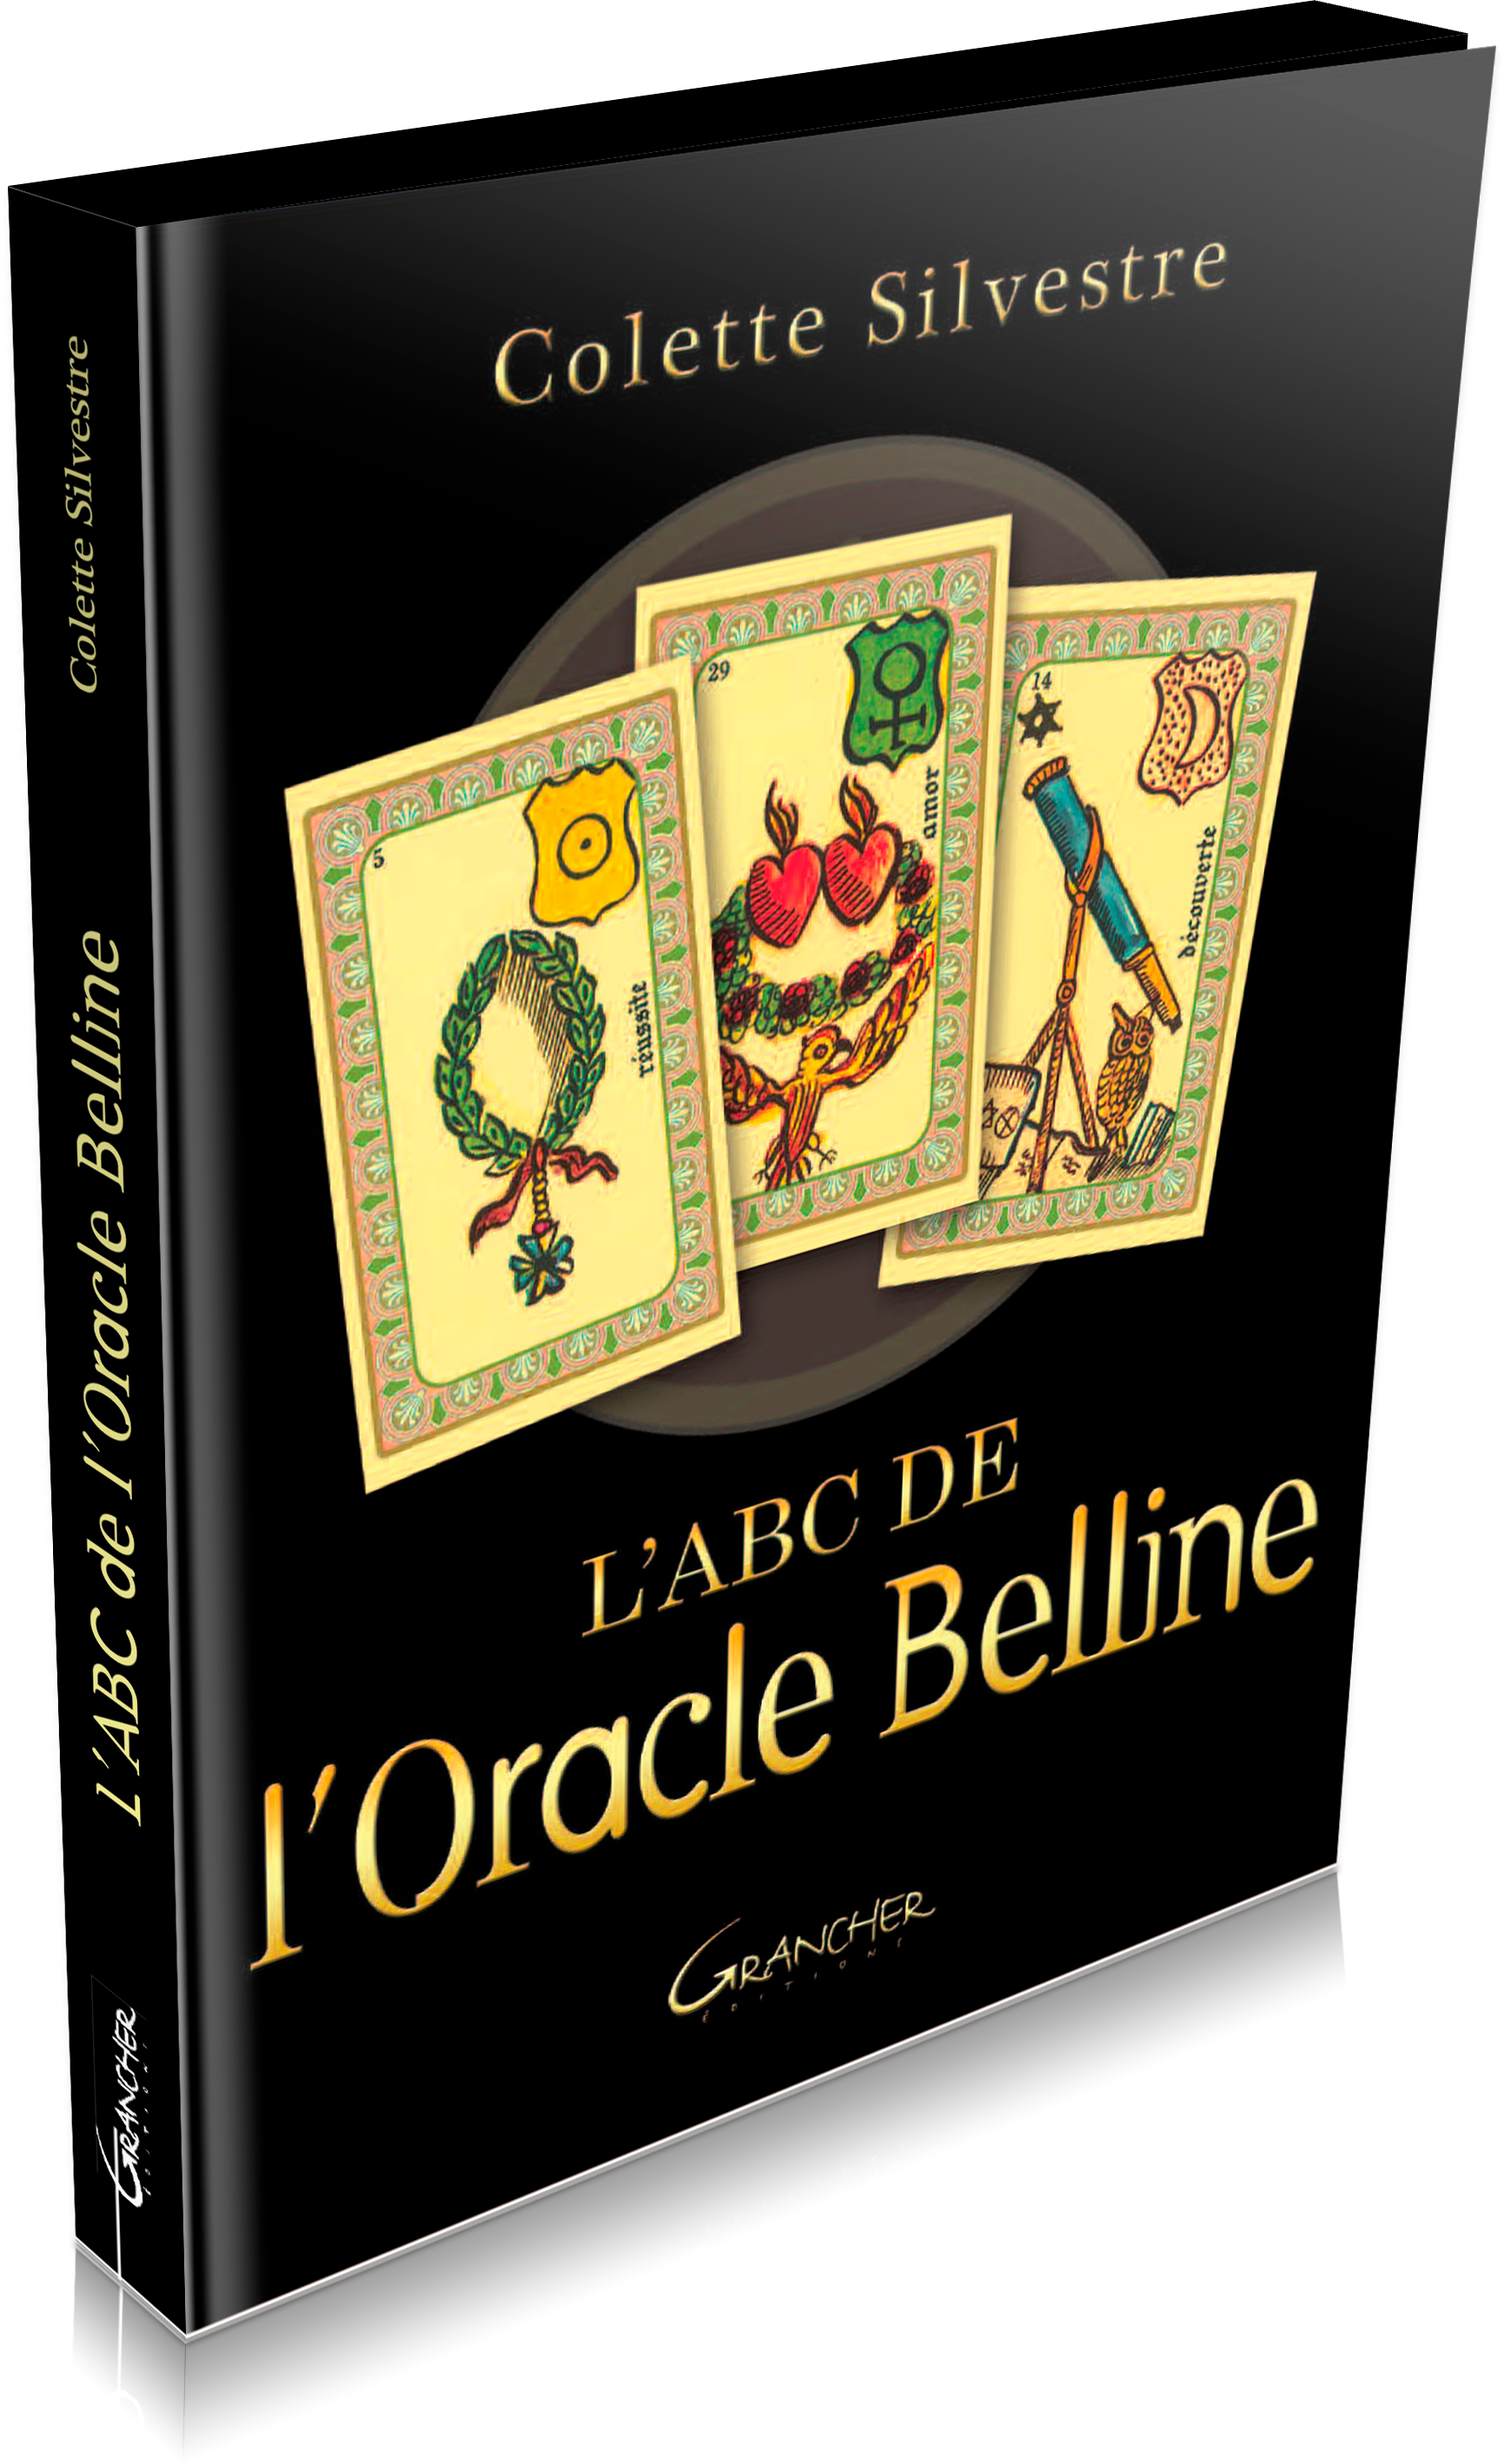 L'Oracle Belline